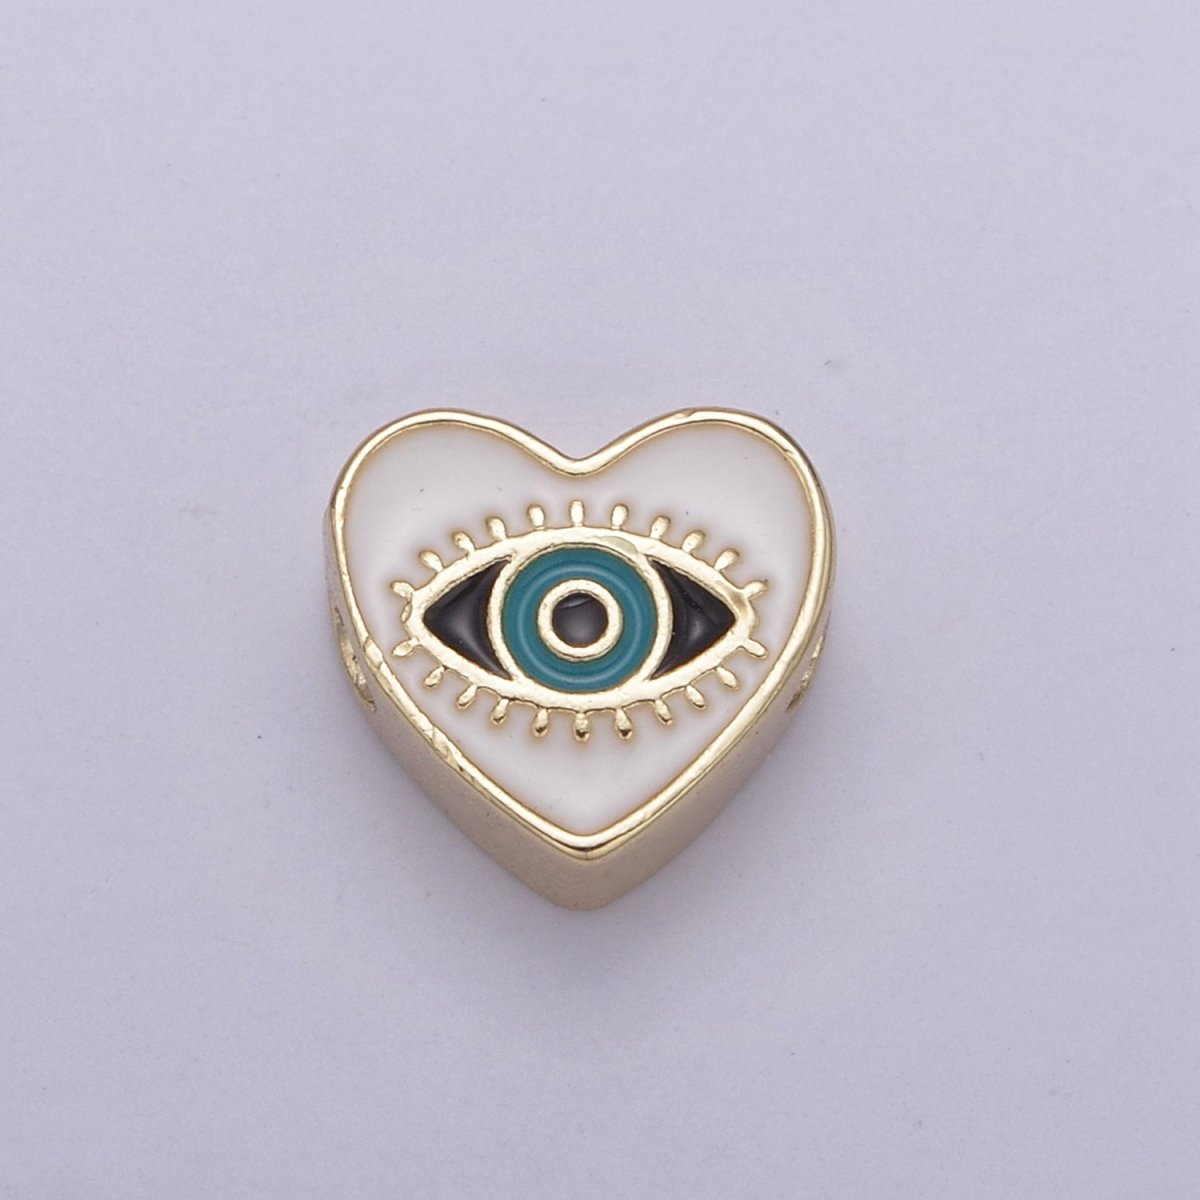 10mm Evil eye beads, Heart eye jewelry beads, Heart beads, Black Blue White Enamel bead spacer for Bracelet Component B-167 B-190 B-206 - DLUXCA